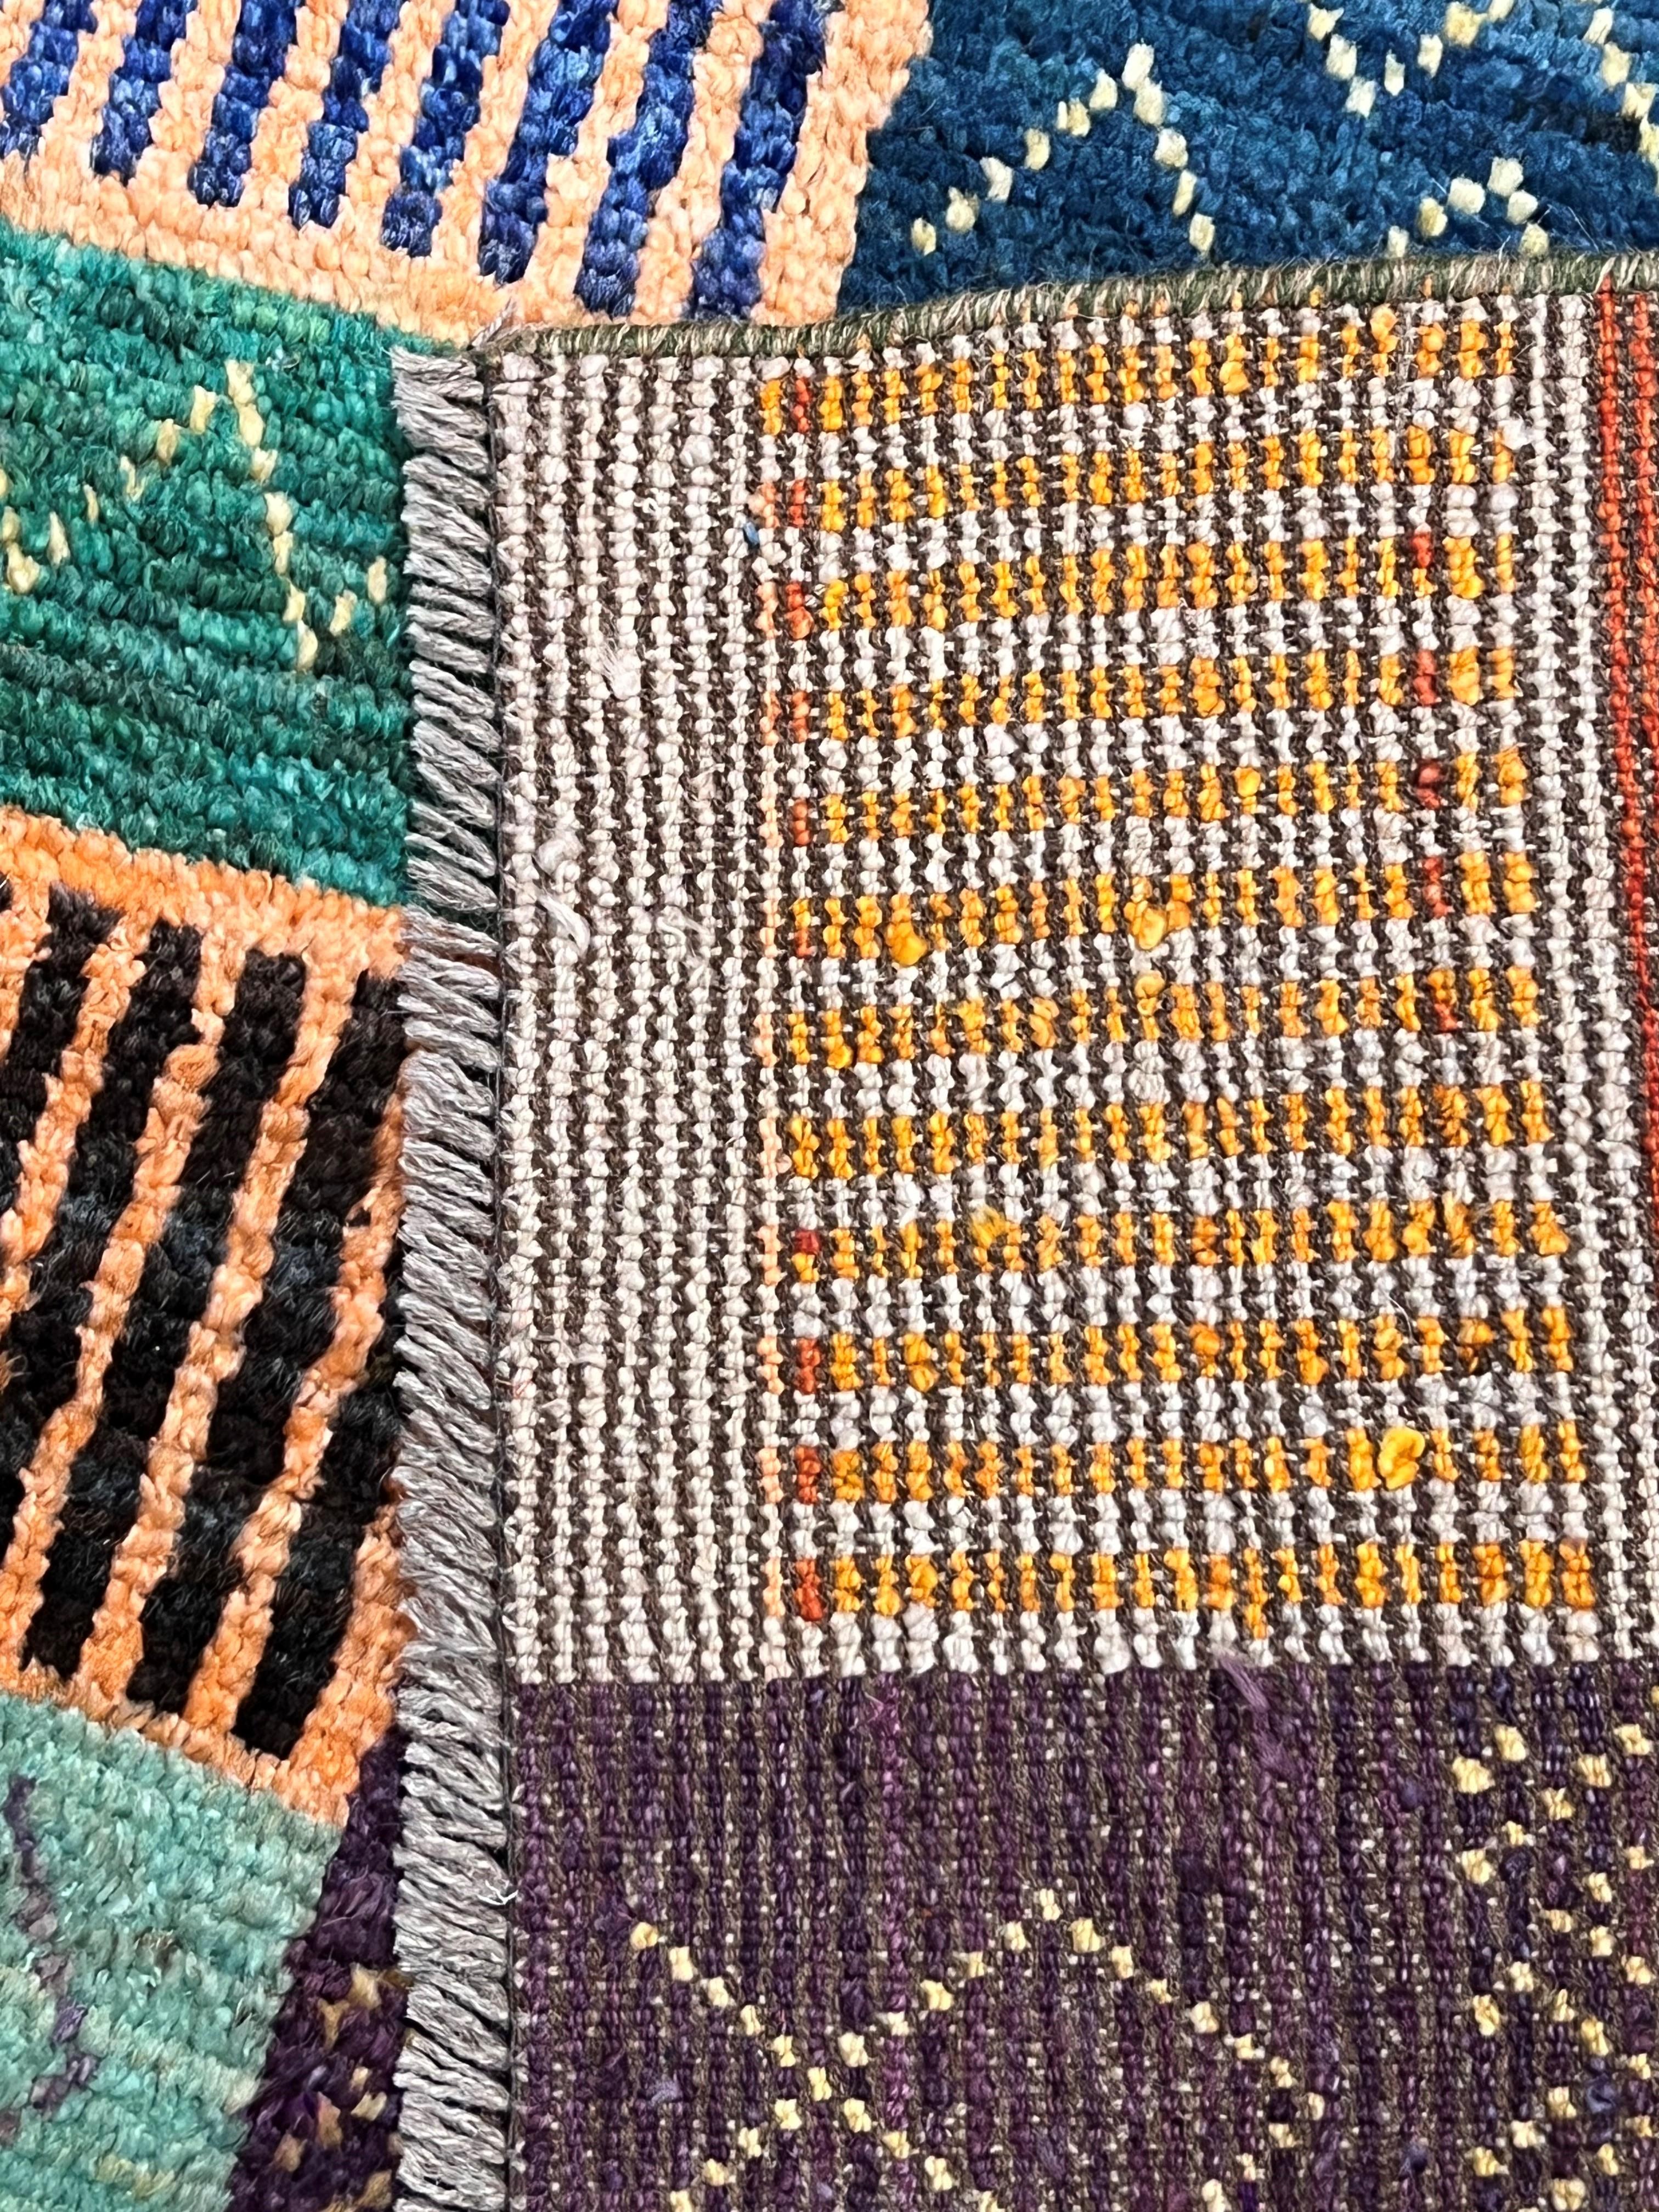 
I tappeti Taimany vengono realizzati nella provincia di Herat, in Afghanistan. Questa produzione viene completamente gestita da donne afgane, che scelgono le lane, i disegni i colori per produrre questi meravigliosi tappeti, caratterizzati da una